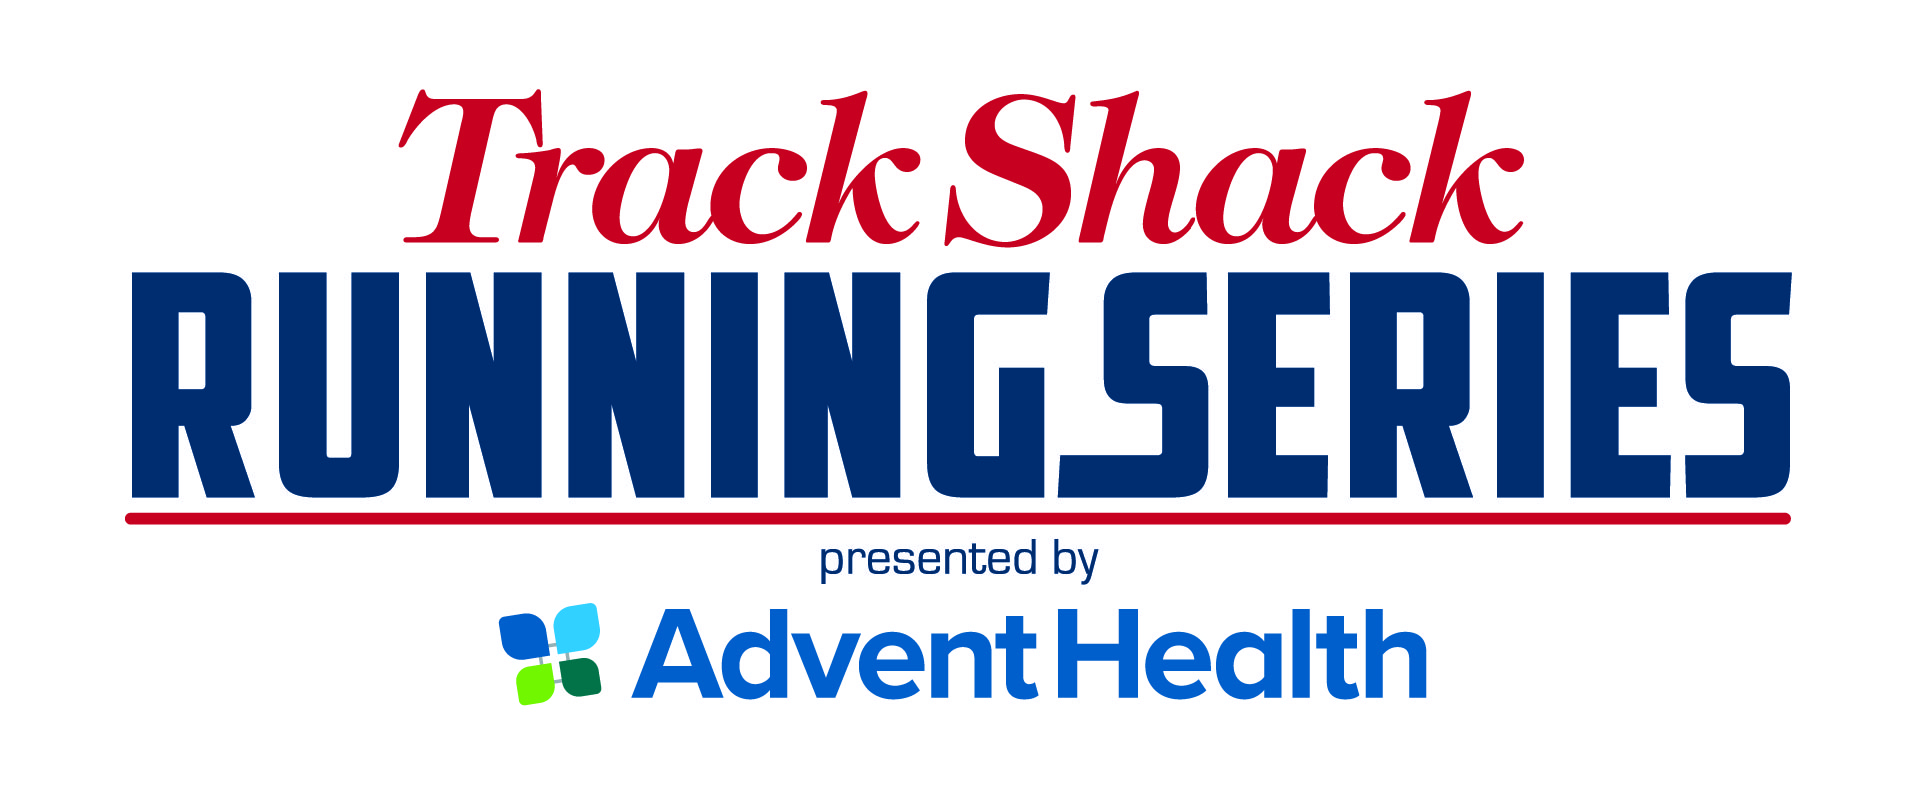 Track Shack TrackShack Running Series